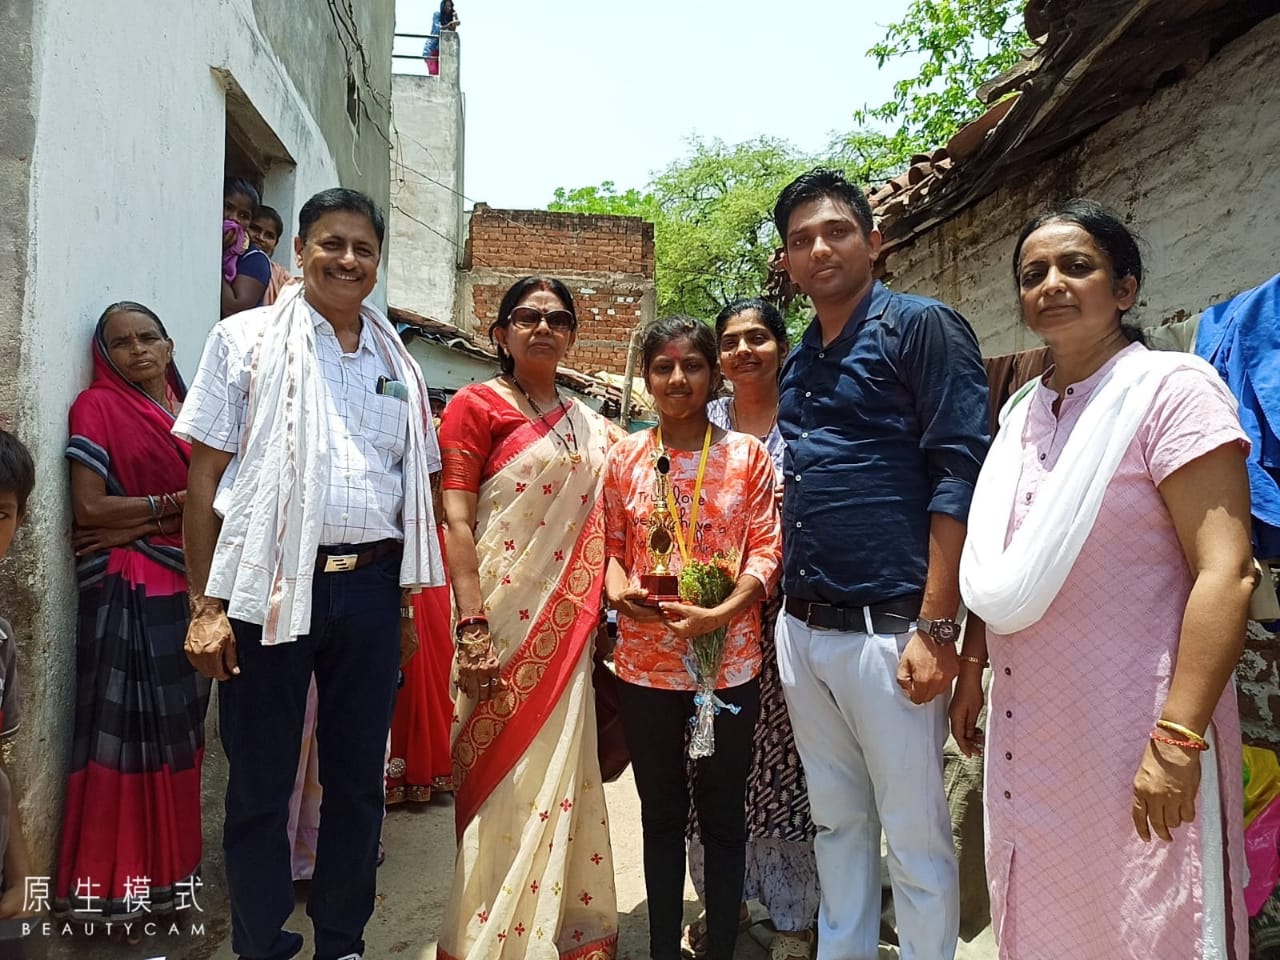 कक्षा 12वीं में दुर्ग जिले से प्रथम व राज्य में आठवां स्थान पाने वाली छात्रा के पिता रिक्शा चालक एवं मां मजदूरी का करती है कार्य, प्राचार्य ने घर जाकर किया सम्मानित